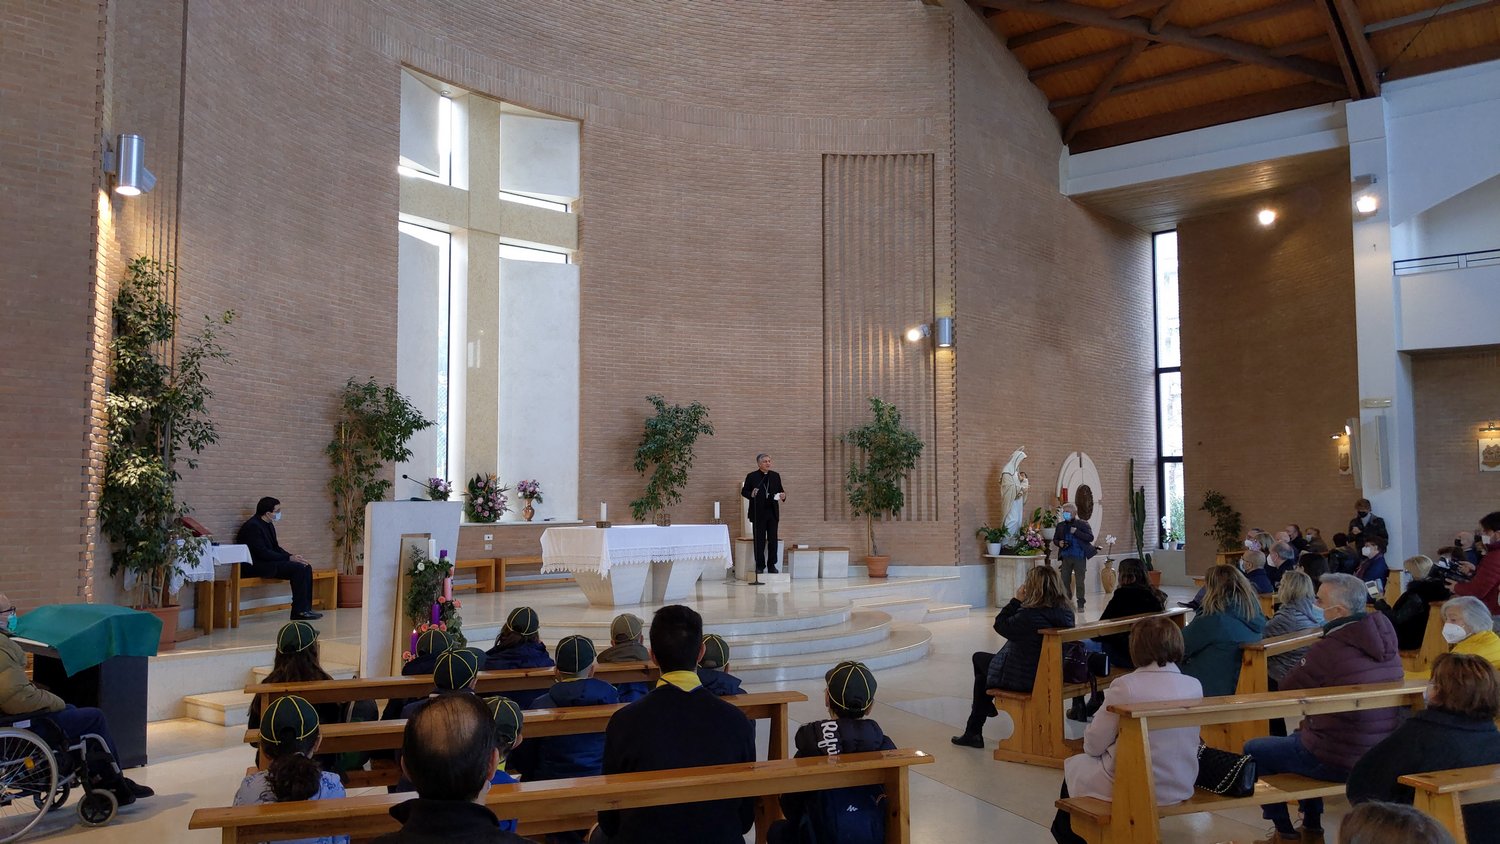 Accoglienza-Vescovo-don-Giampiero-domenica-28-11-2021_-7